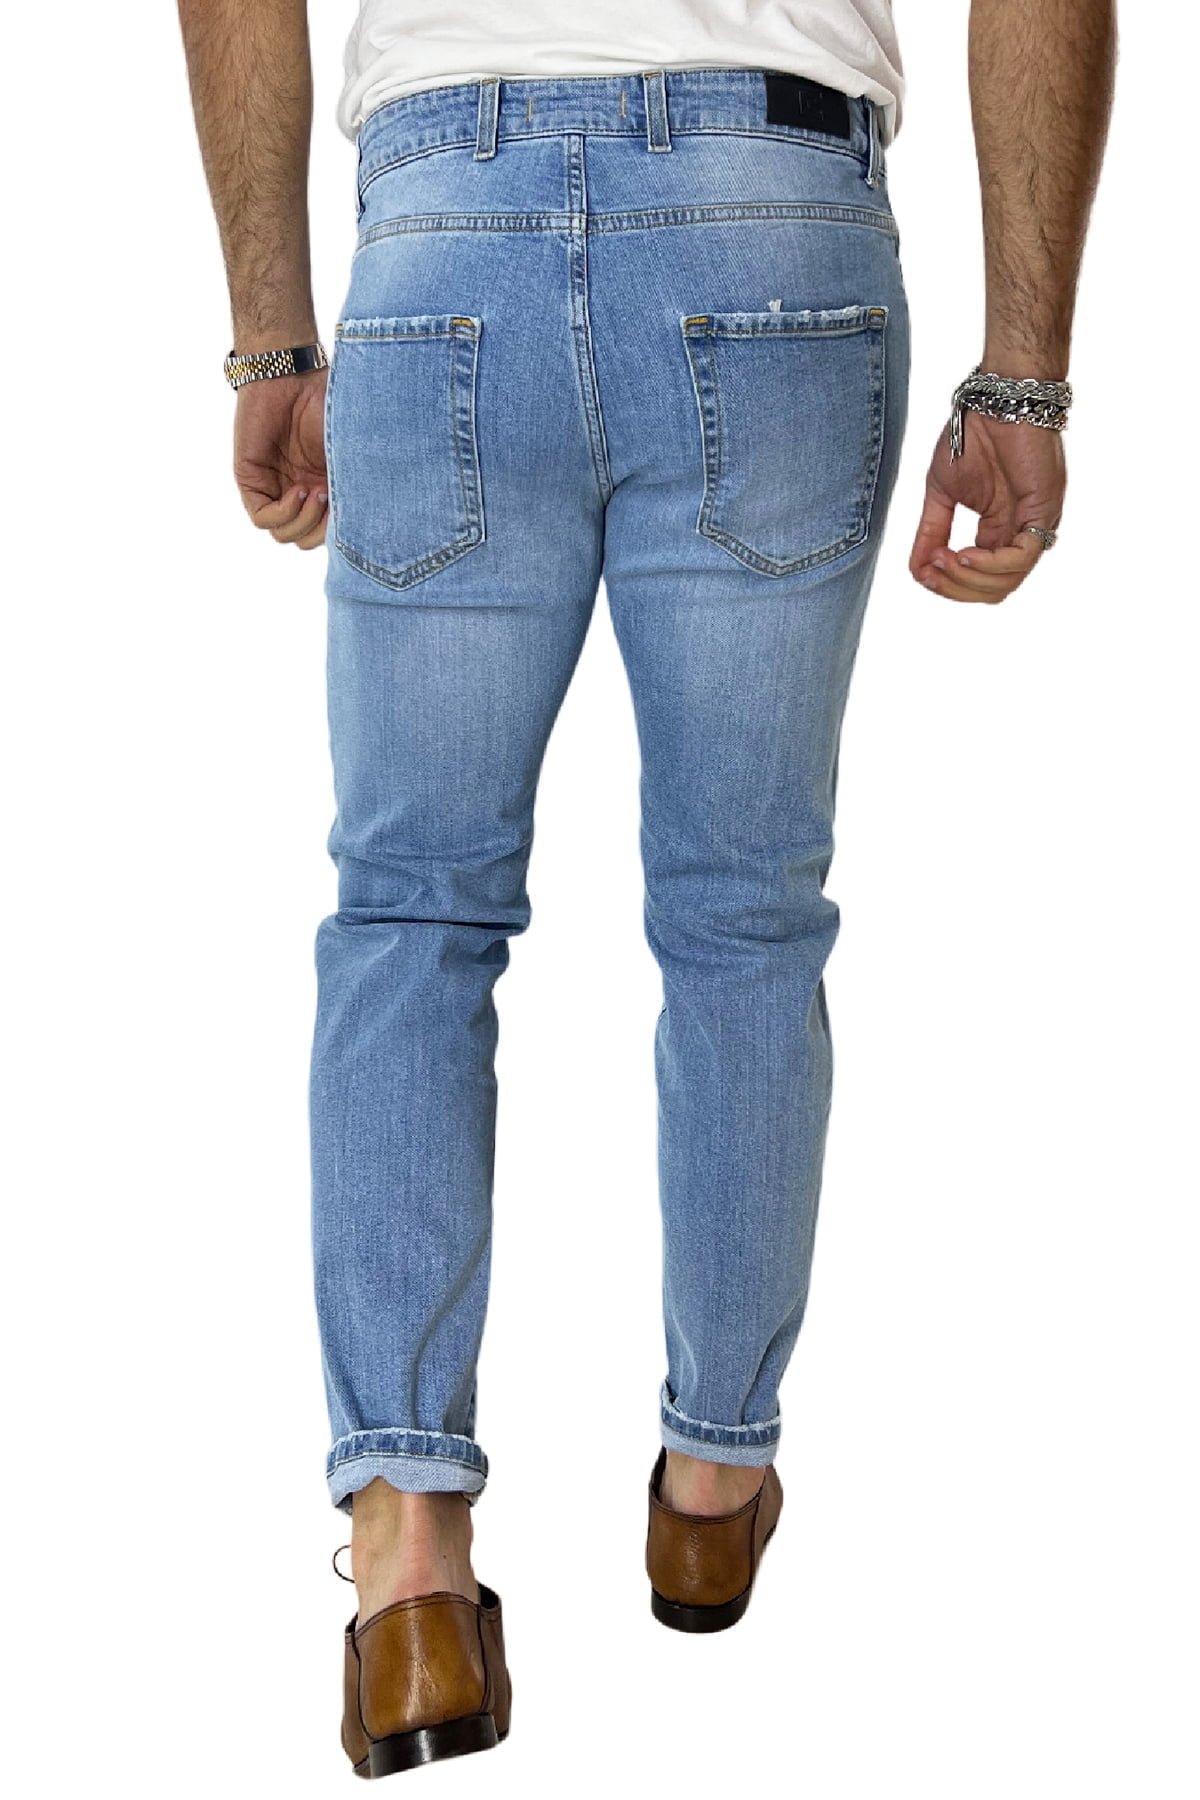 Jeans da uomo lavaggio chiaro modello 5 tasche slim fit made in italy